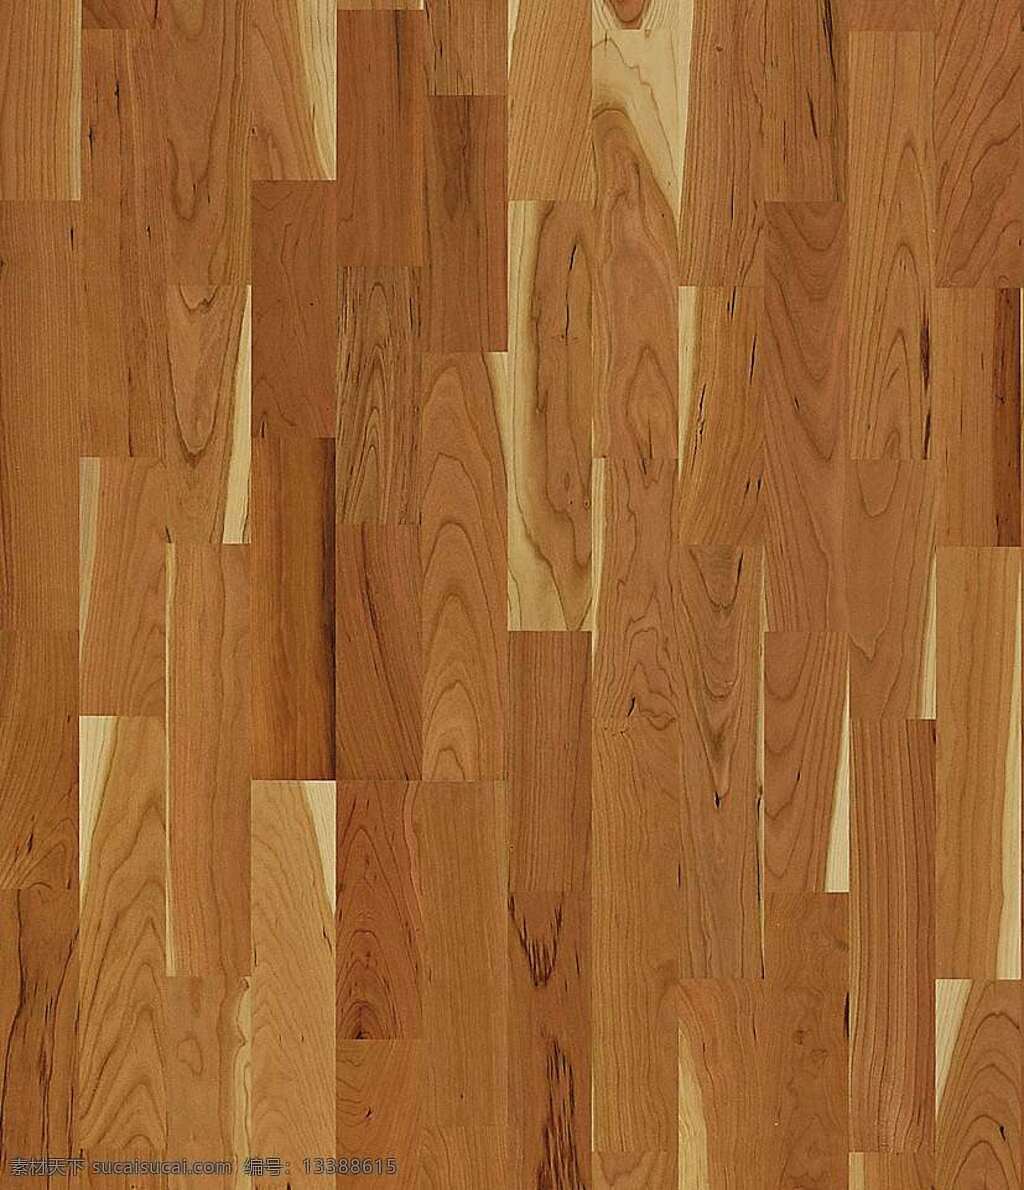 木地板 贴图 木材 木材贴图 木地板贴图 木地板效果图 装修效果图 木地板材质 装饰素材 室内装饰用图